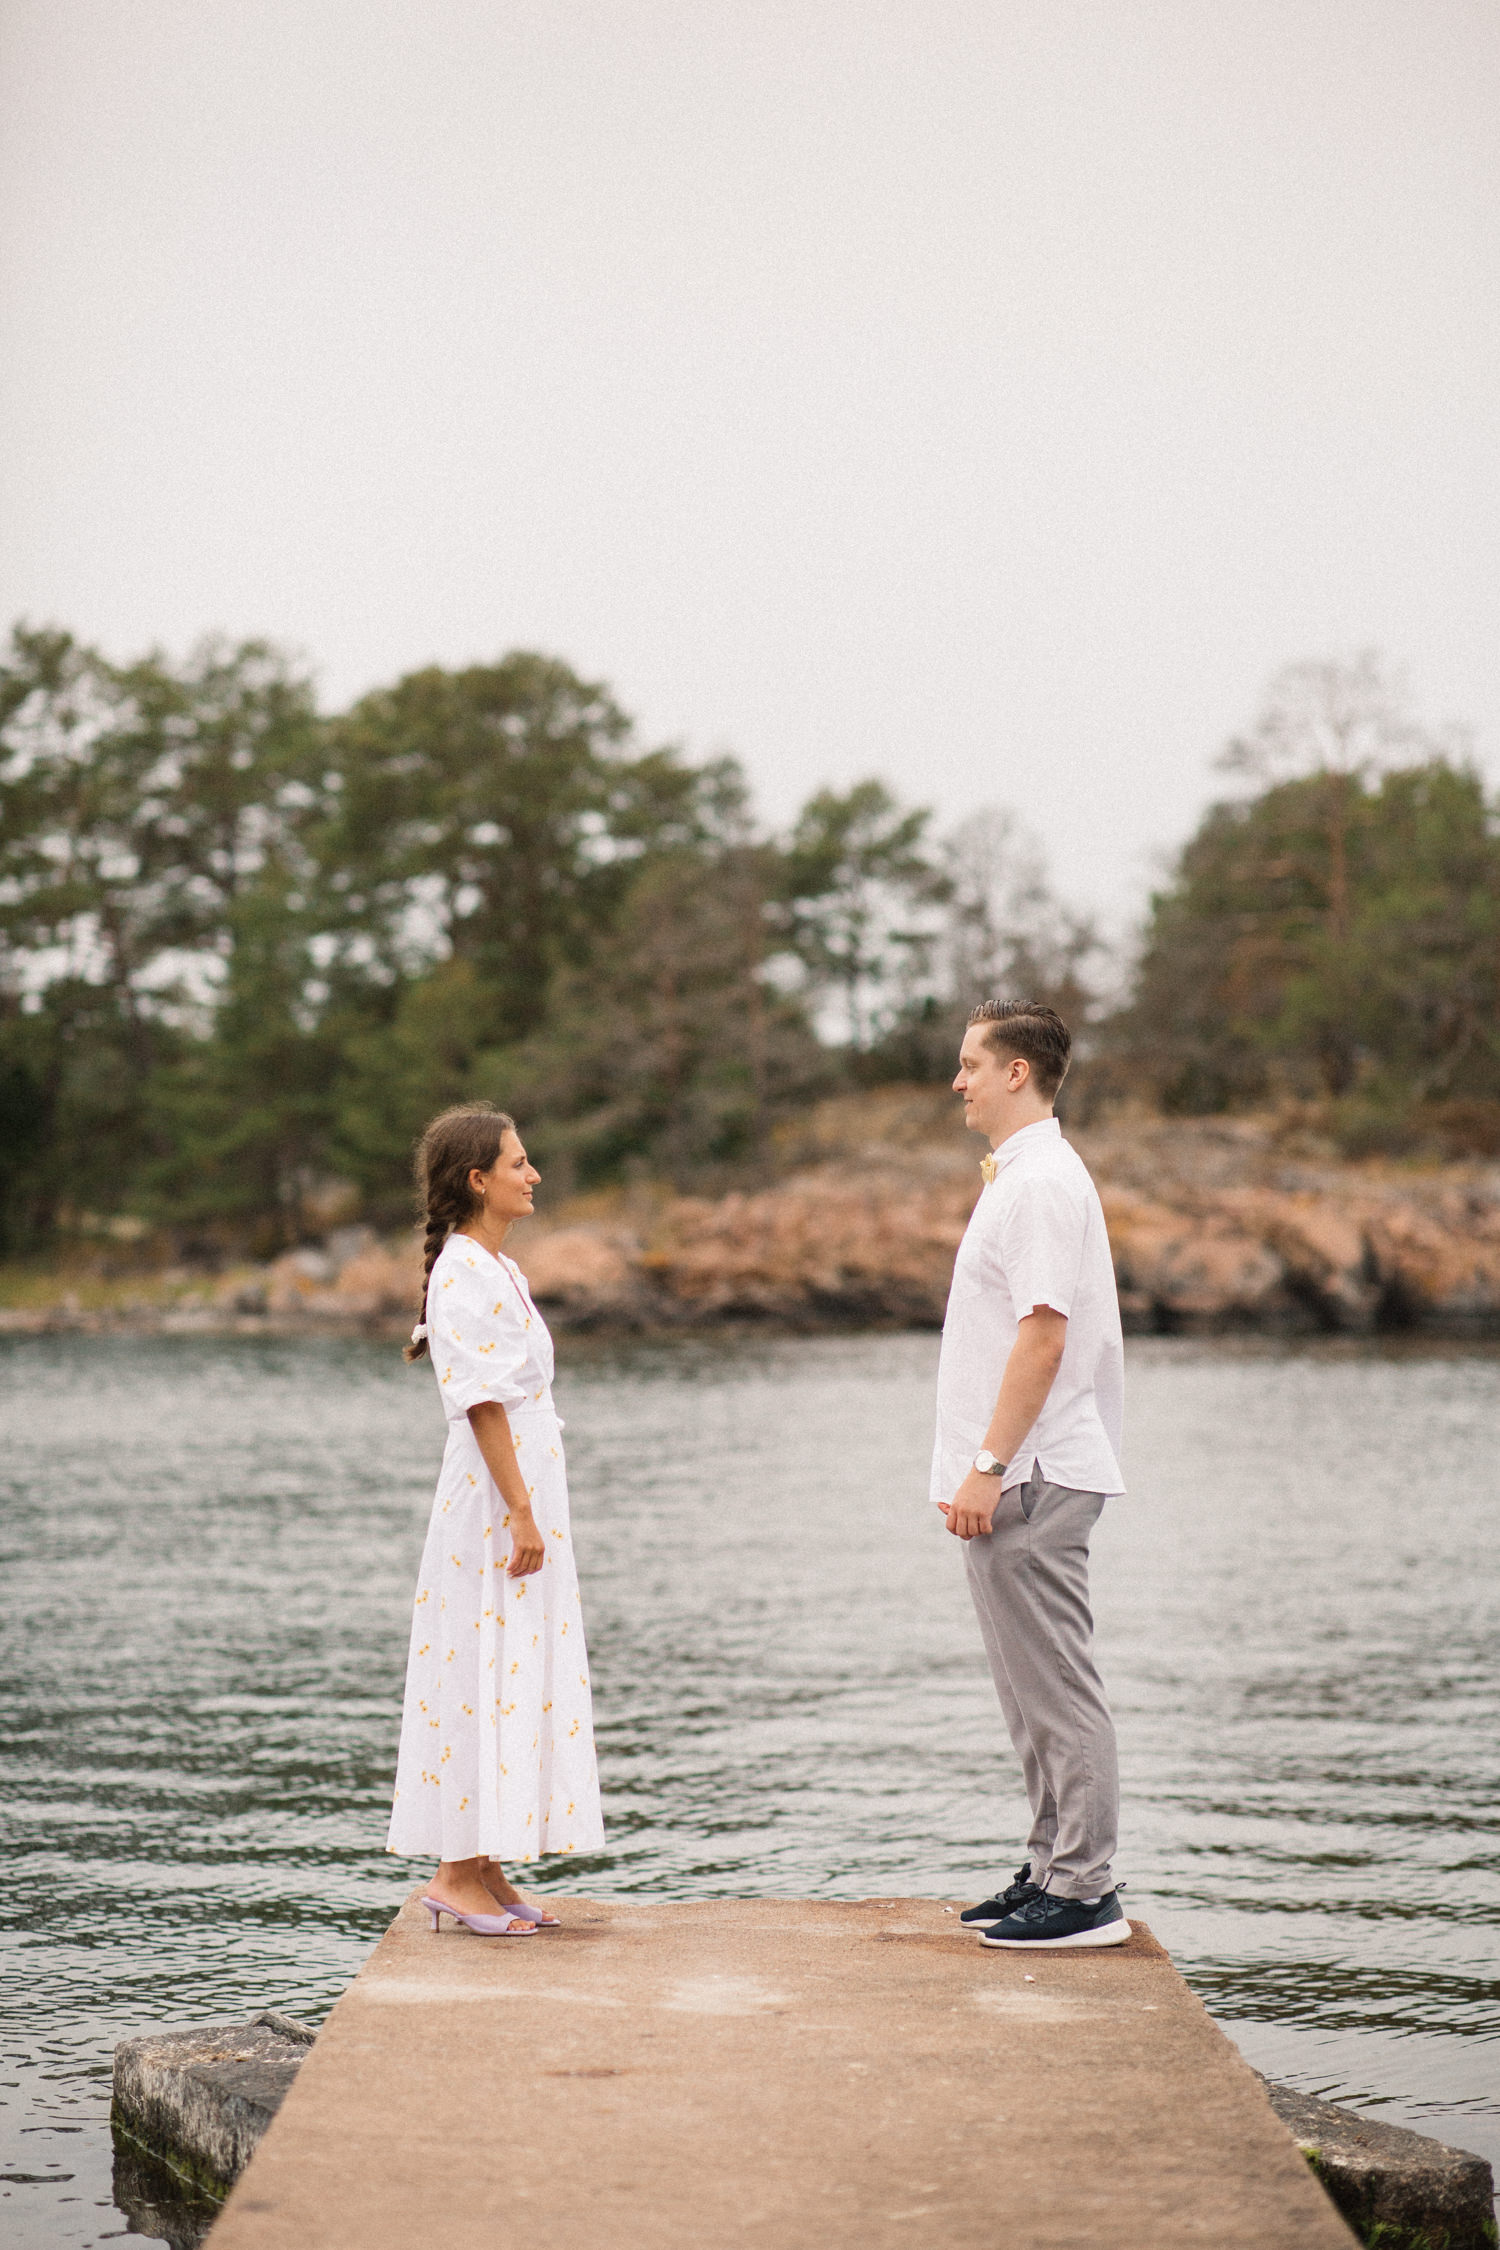 Parfotografering inför bröllop, en så kallad Engagement session, på idylliska Gunnarsö, Oskarshamn som ligger i Småland. Fotograf är Tove Lundquist, verksam bröllopsfotograf i Oskarshamn och Småland.